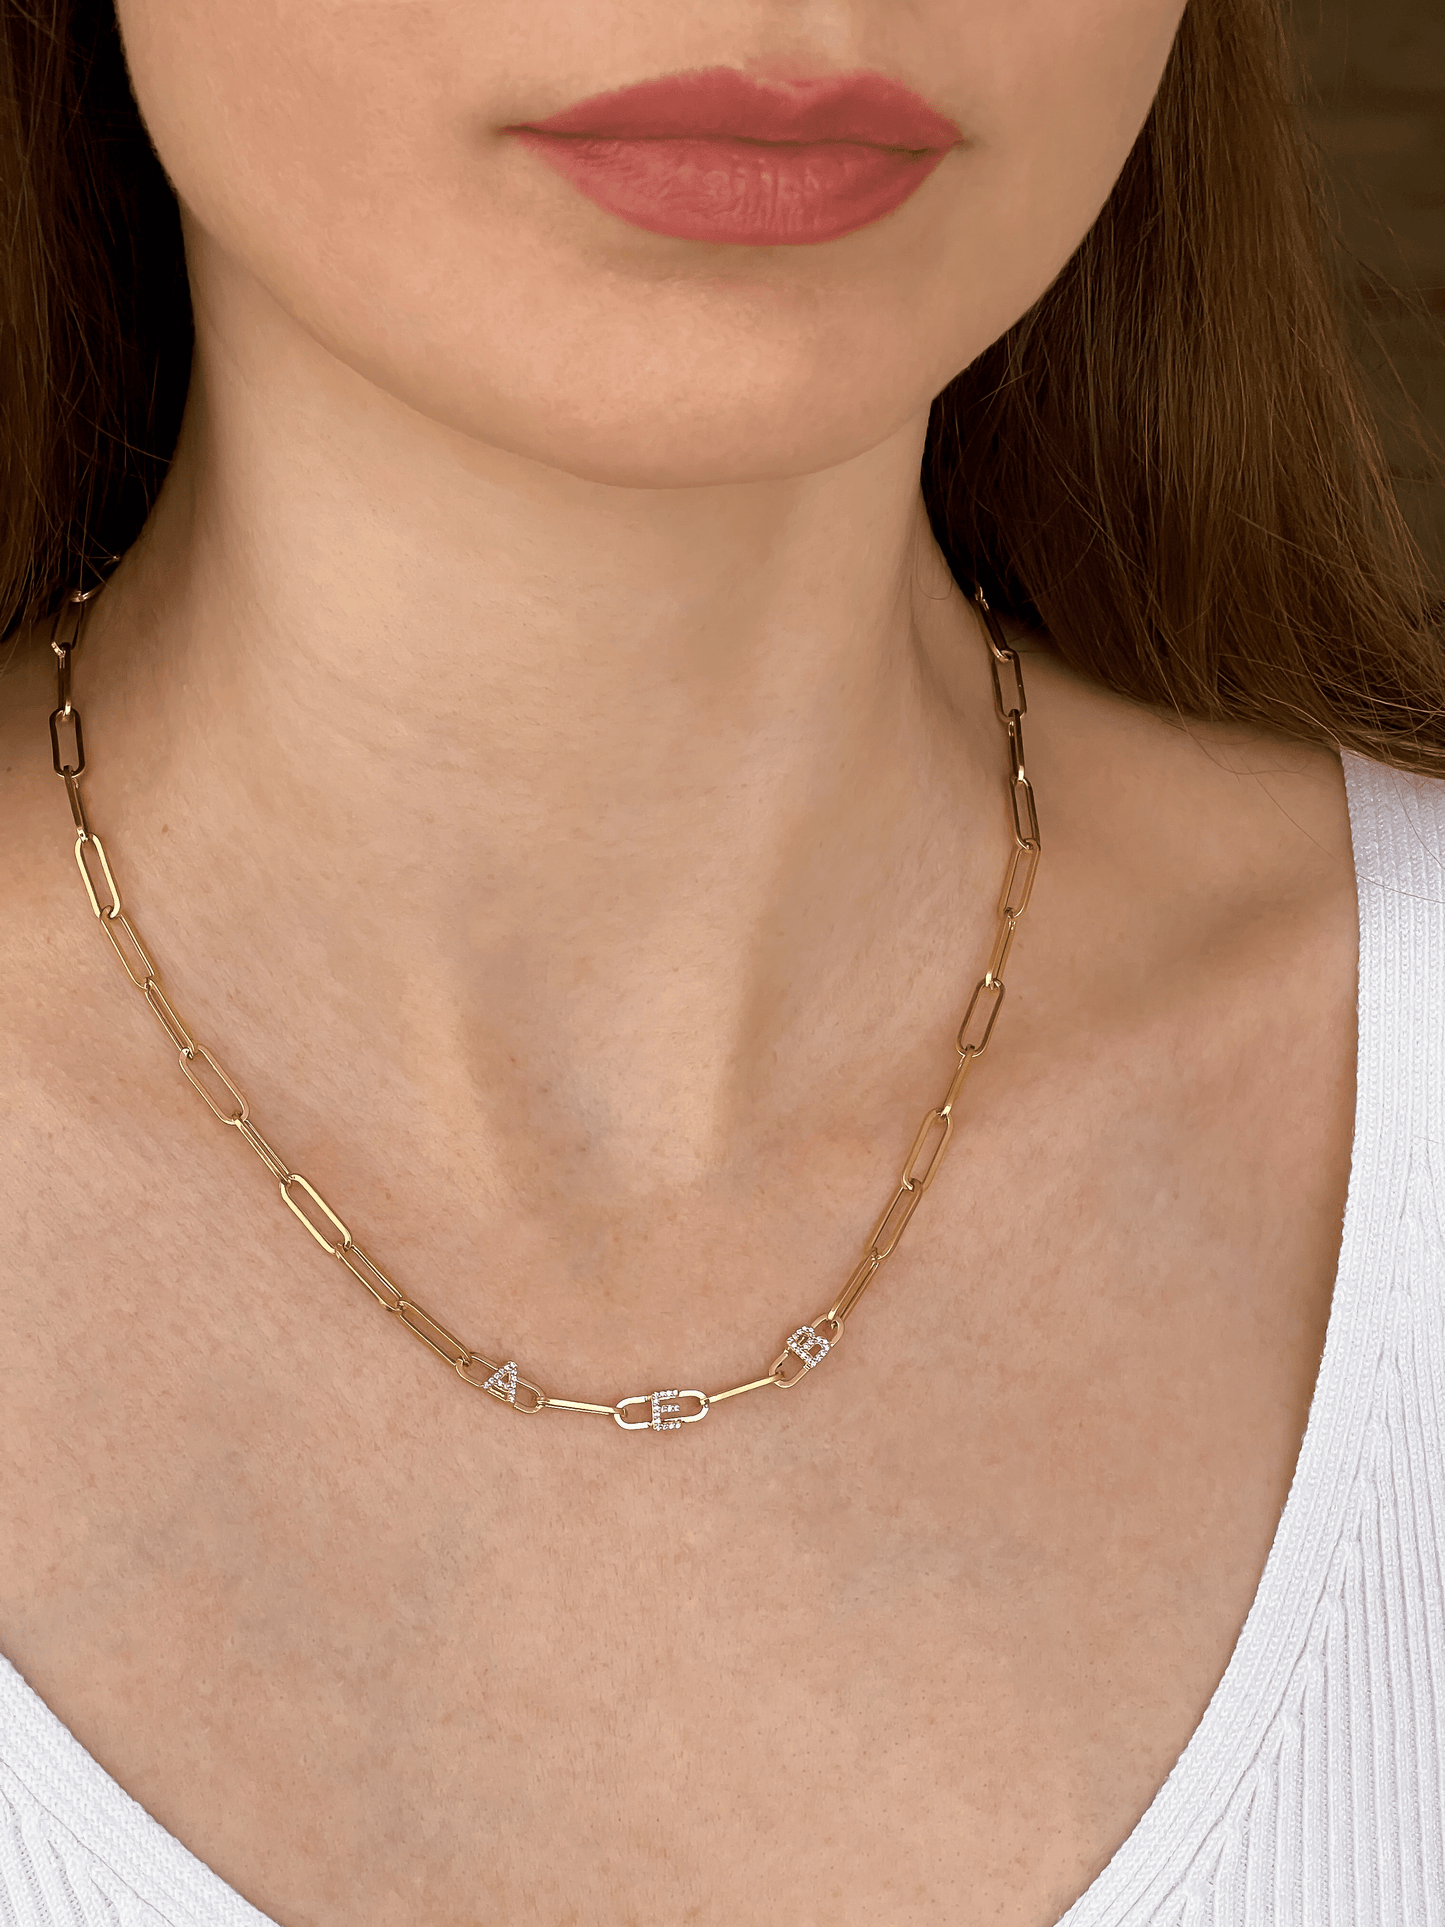 Collier Liens & Initiale(s) - Argent 925 Necklaces magal-dev 